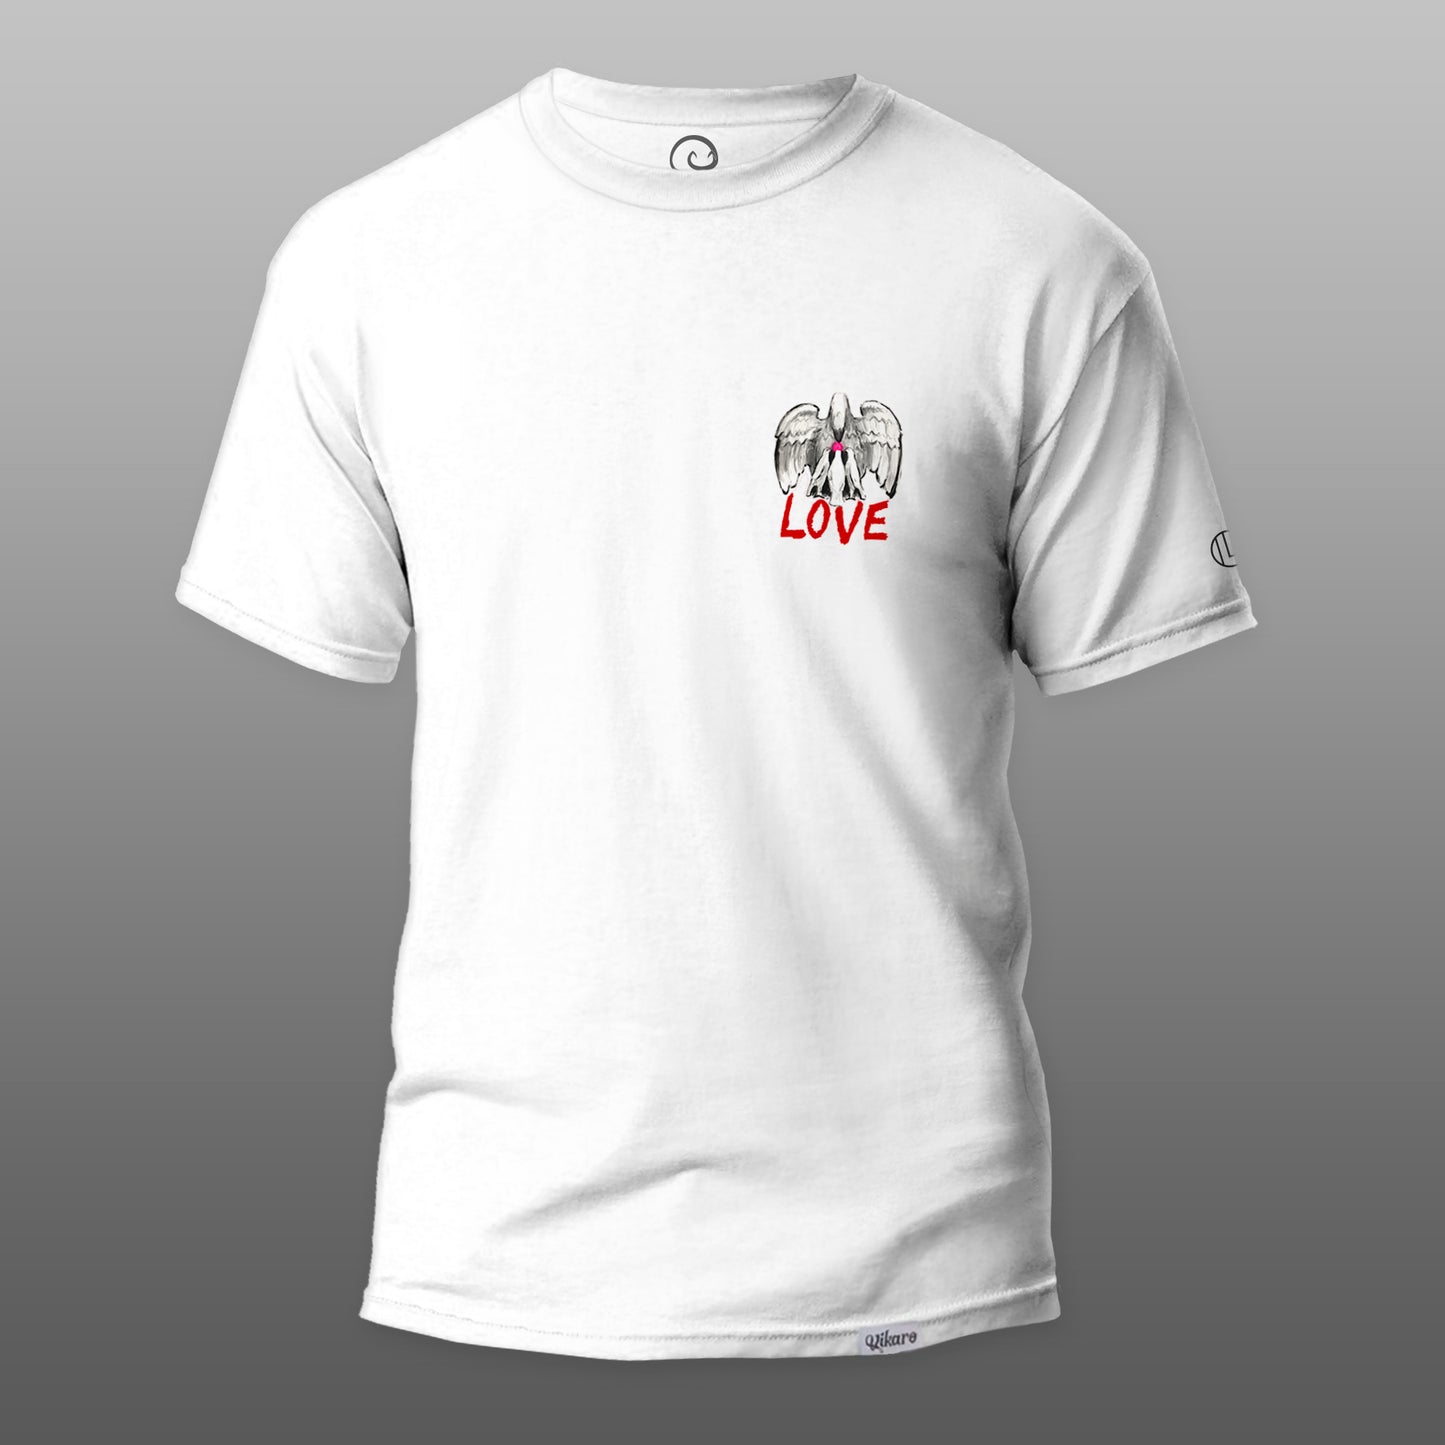 Camiseta "LOVE"